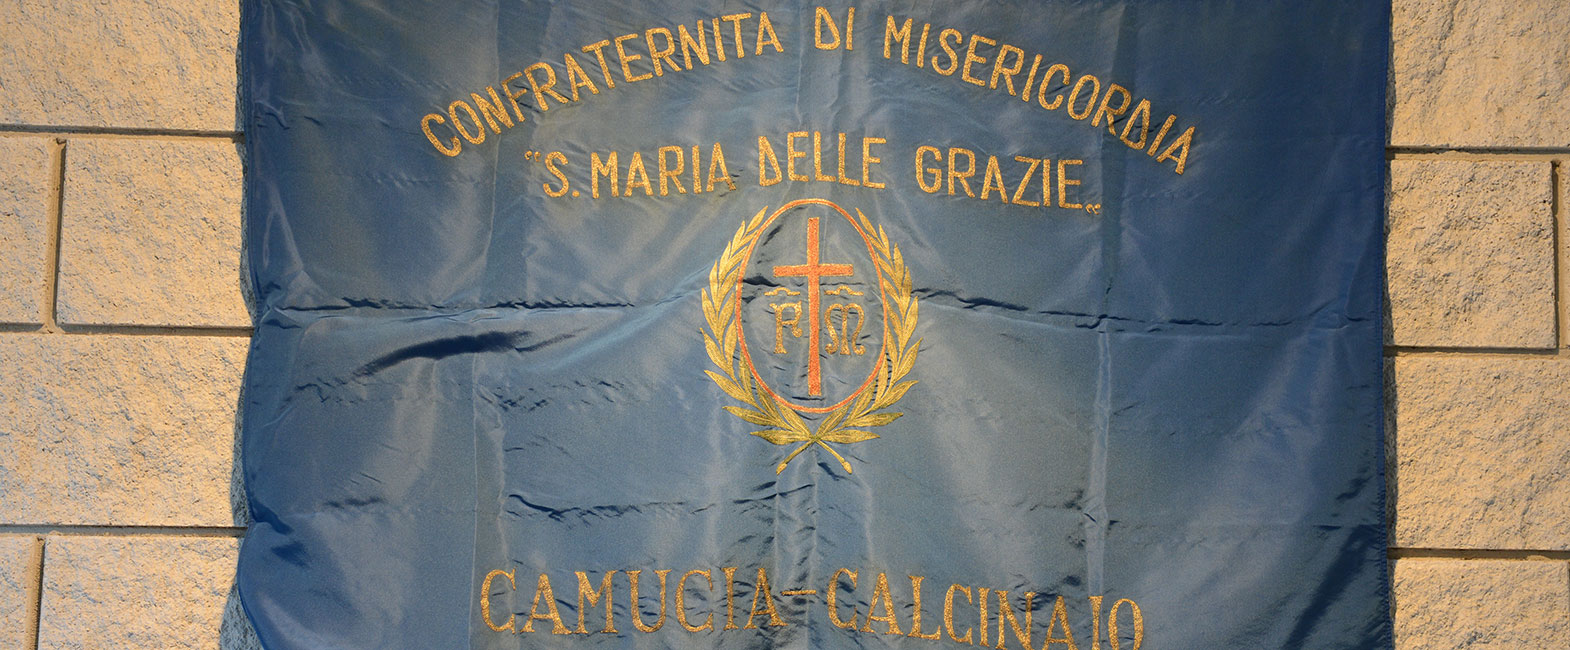 Misericordia di Camucia - Calcinaio, Cortona, Arezzo